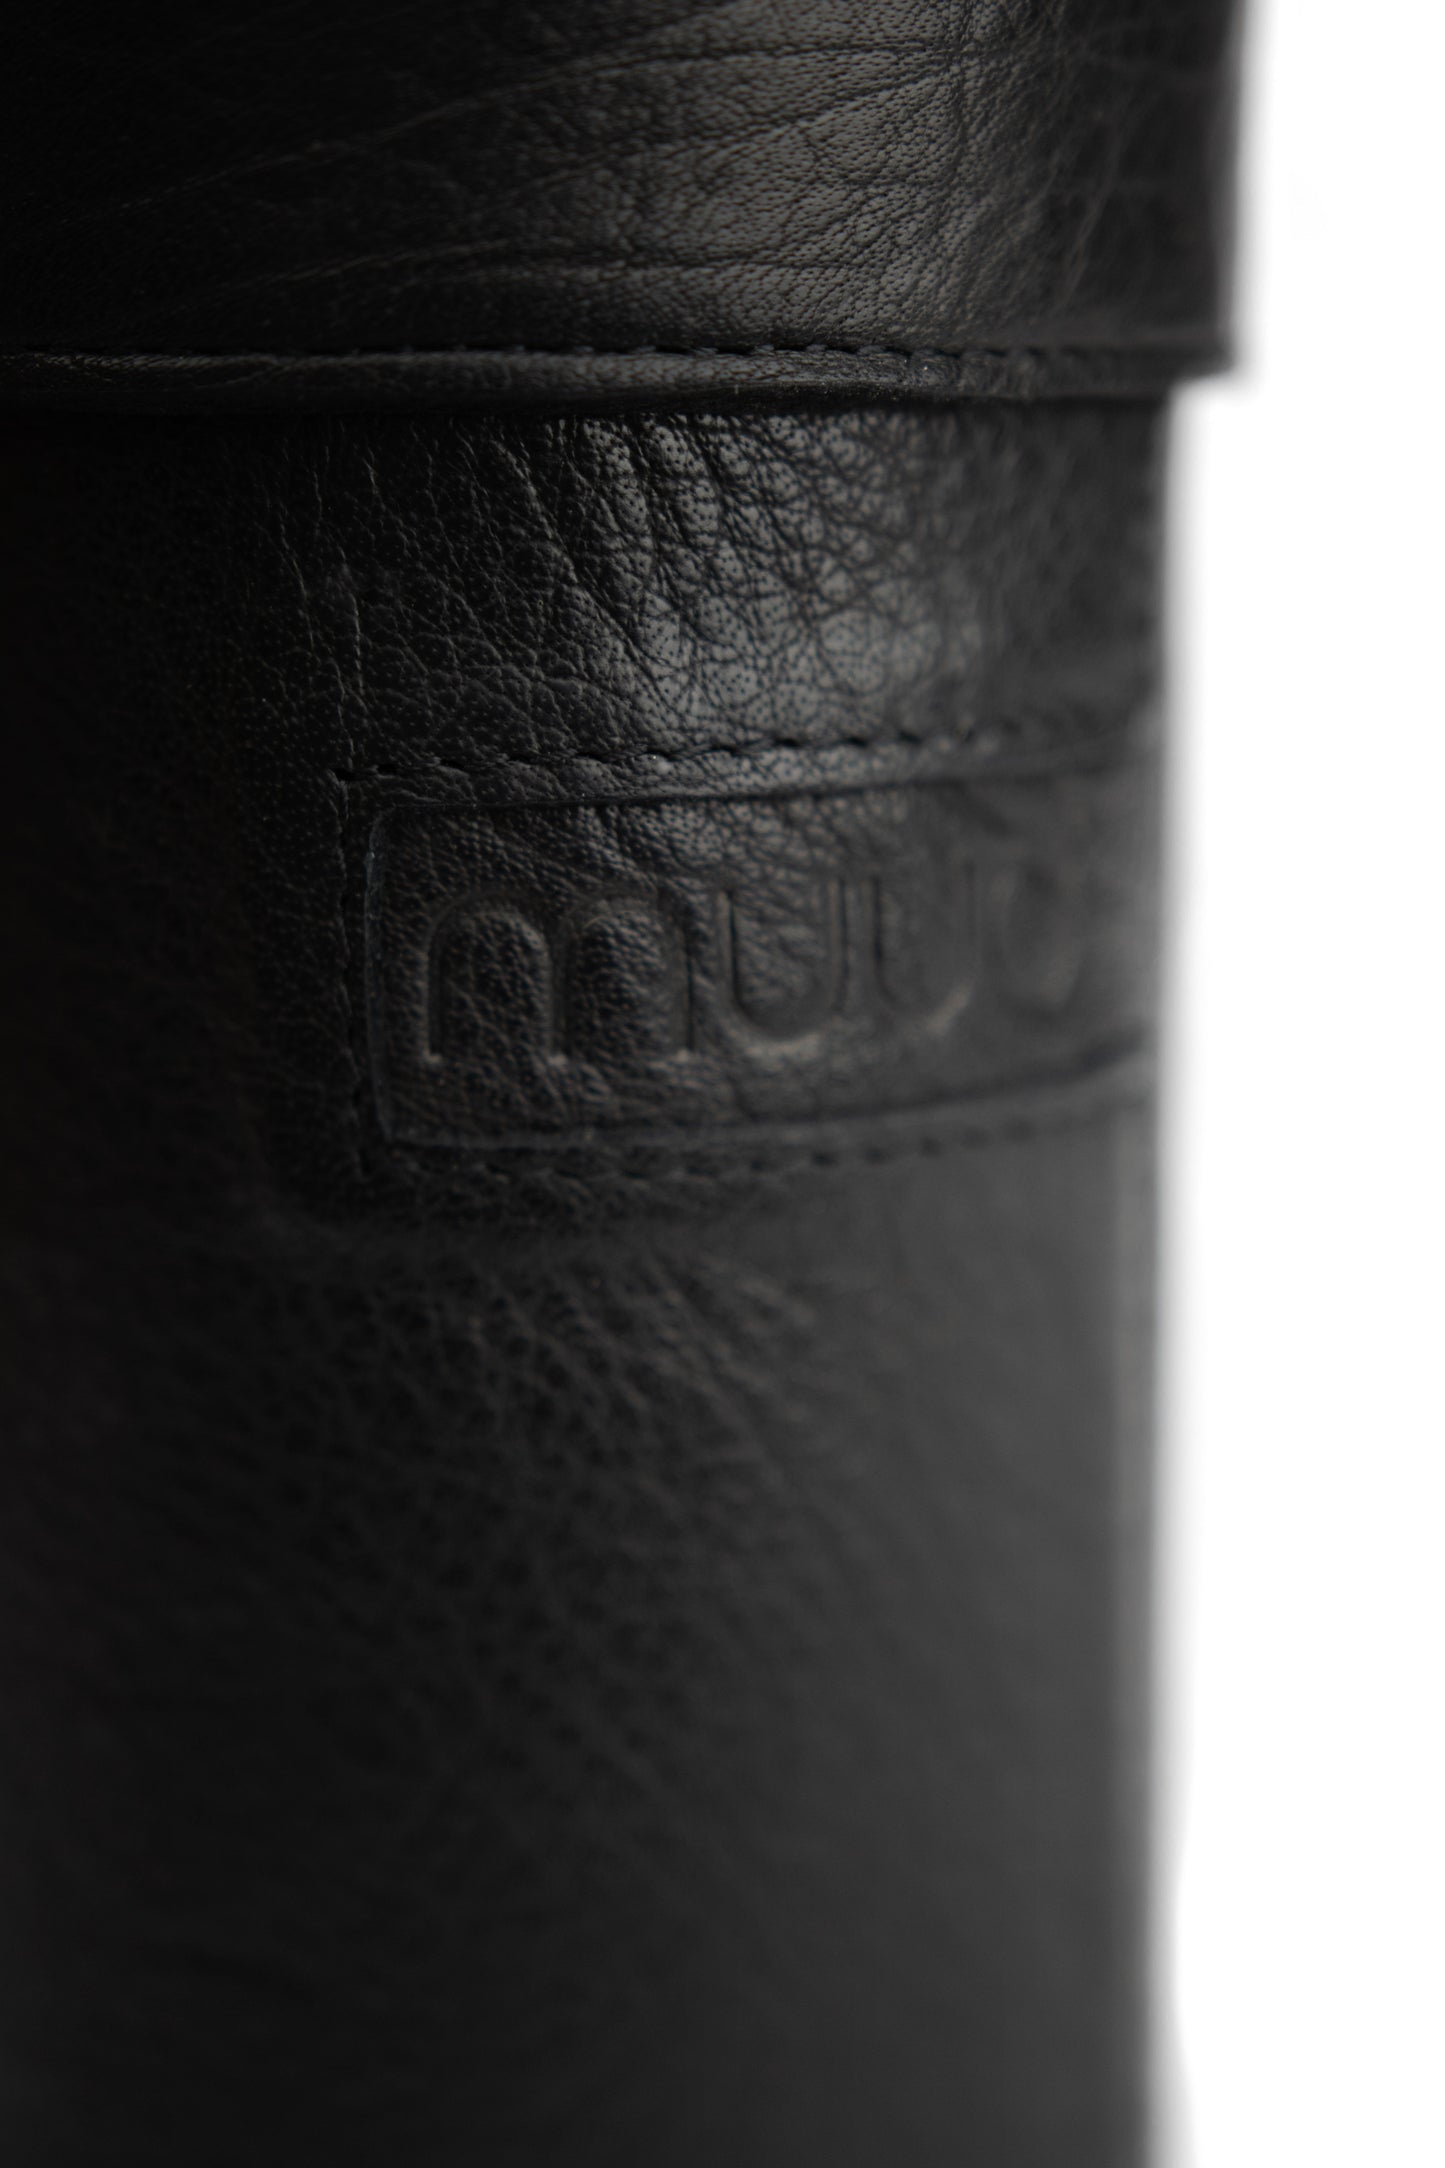 MUUD Mountain Handgefertigte Lederbox zur Aufbewahrung von Kleinigkeiten oder Stricknadeln